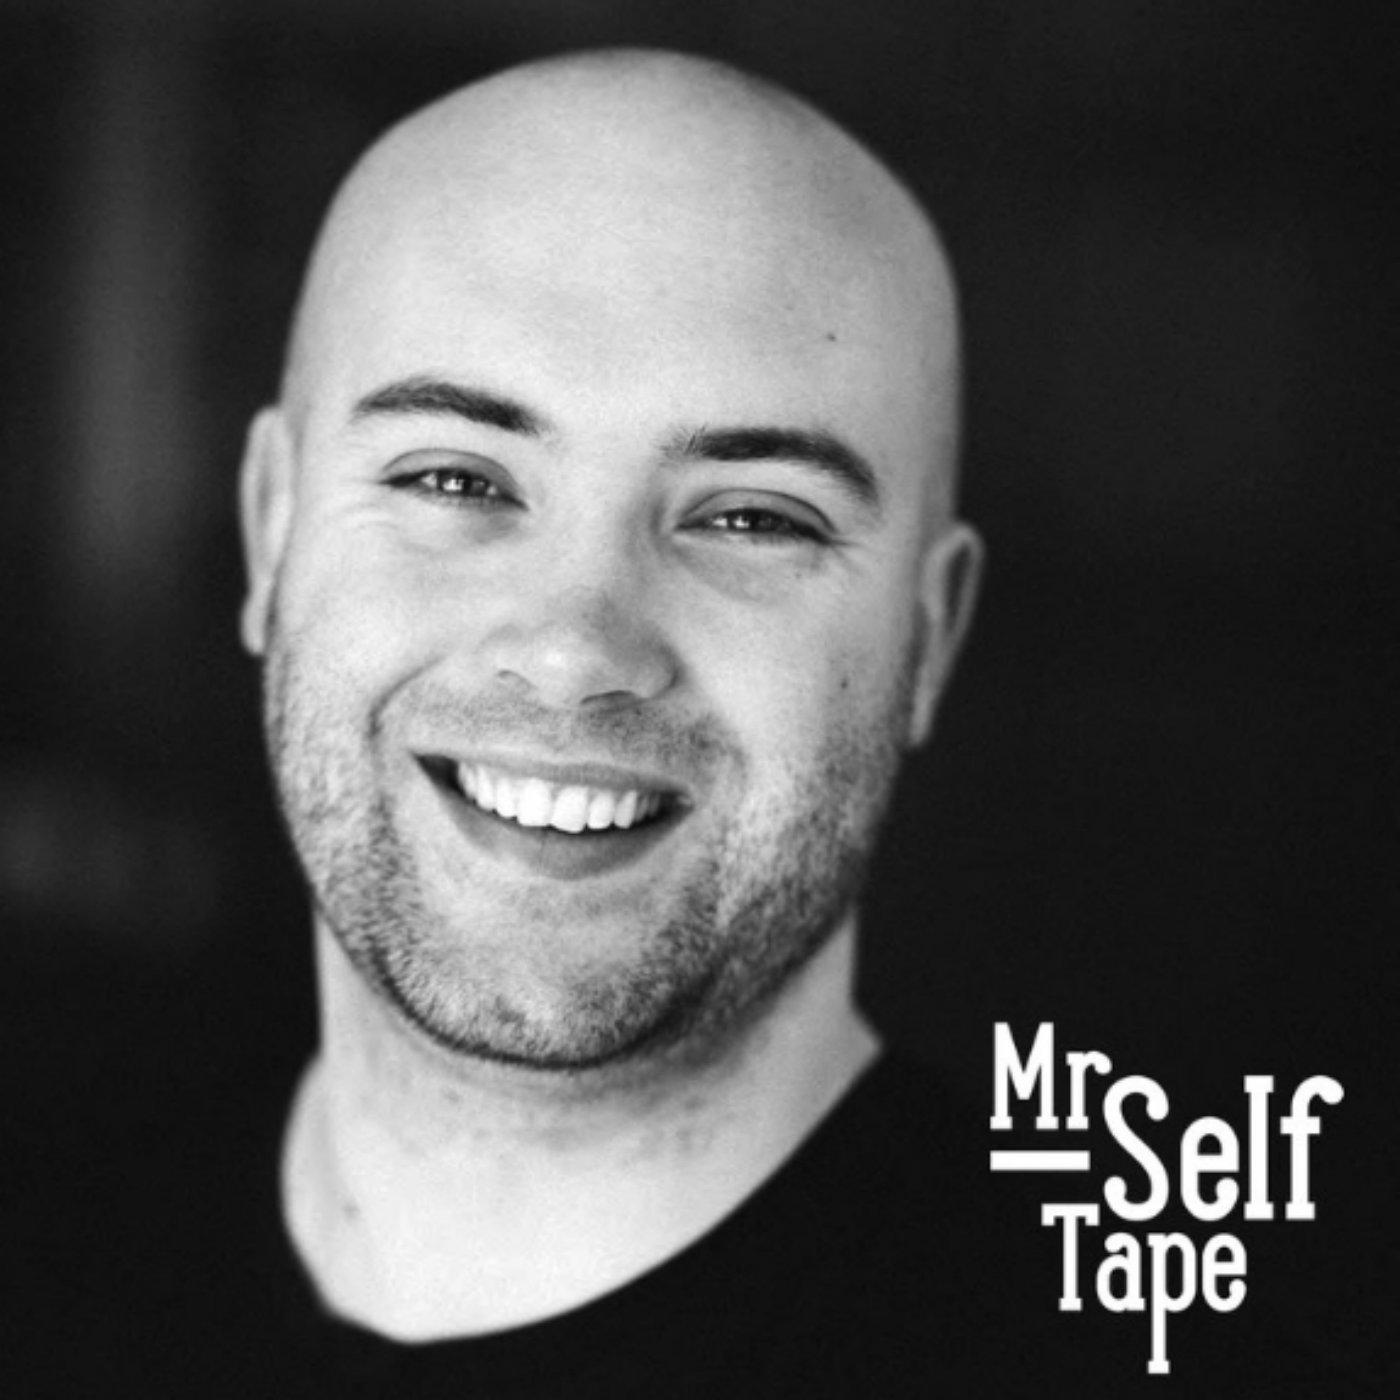 The Mr selftape's Podcast